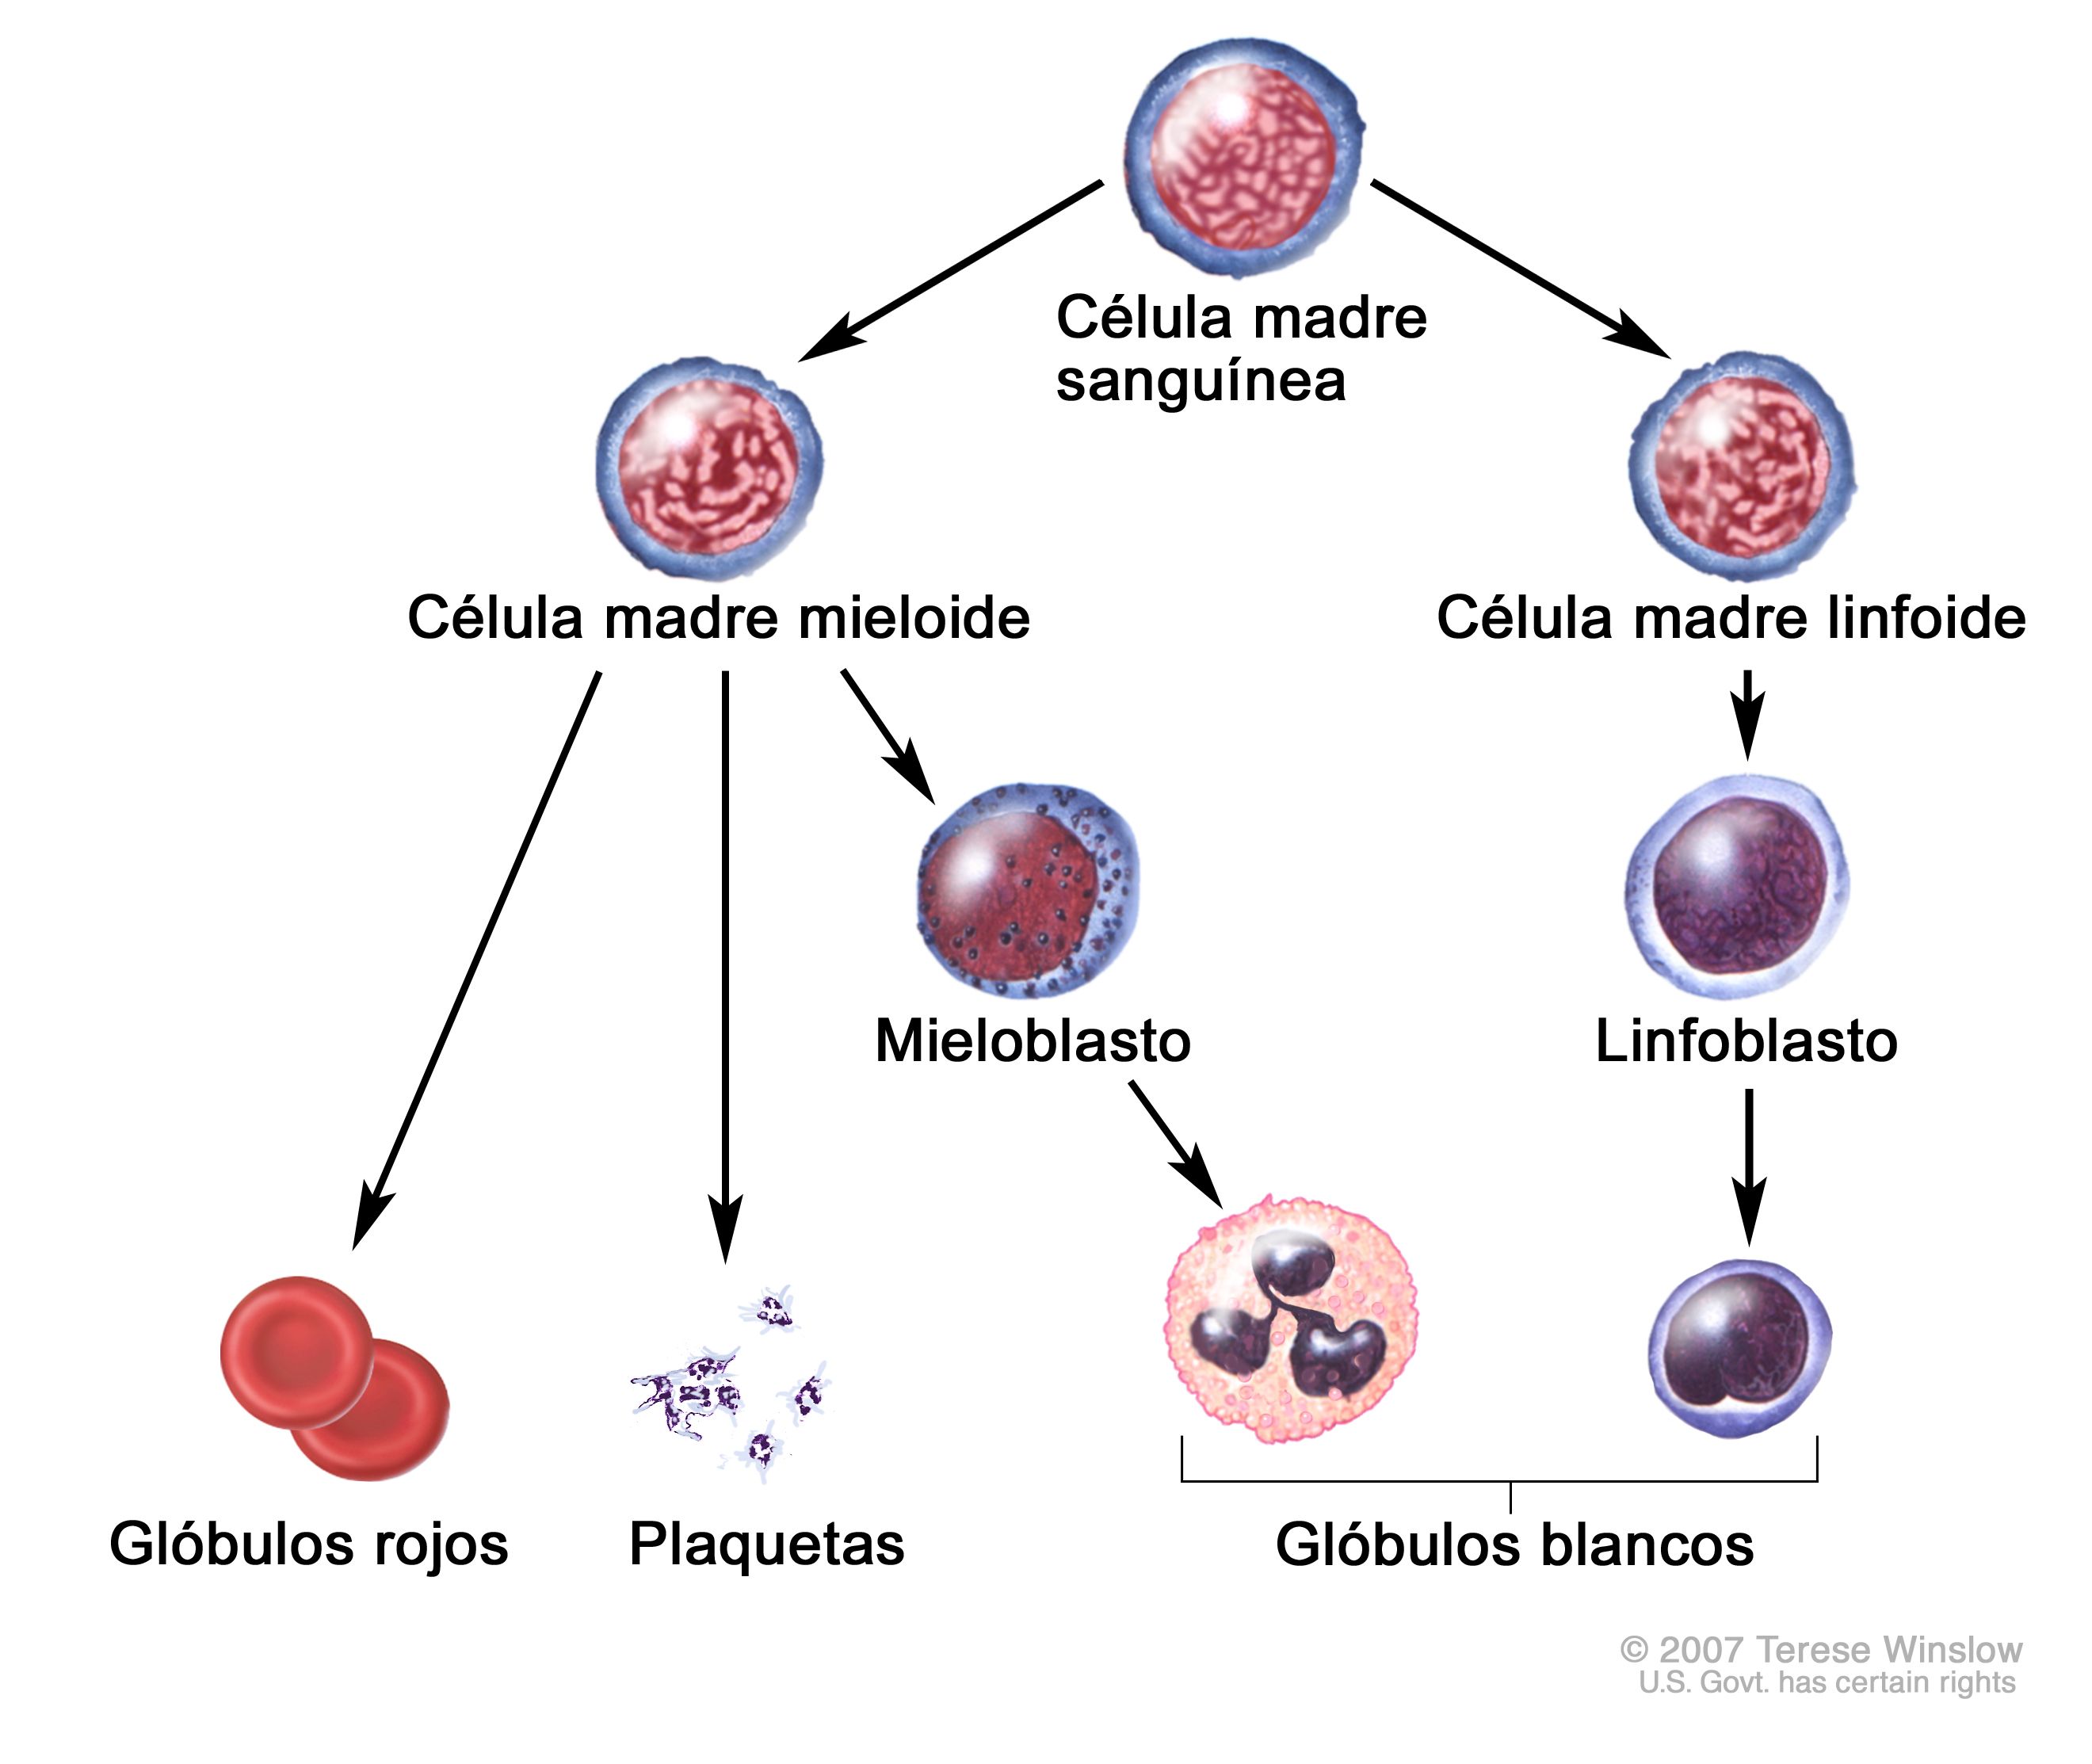 Semejanza Sobrevivir muñeca Definición de célula madre sanguínea - Diccionario de cáncer del NCI - NCI